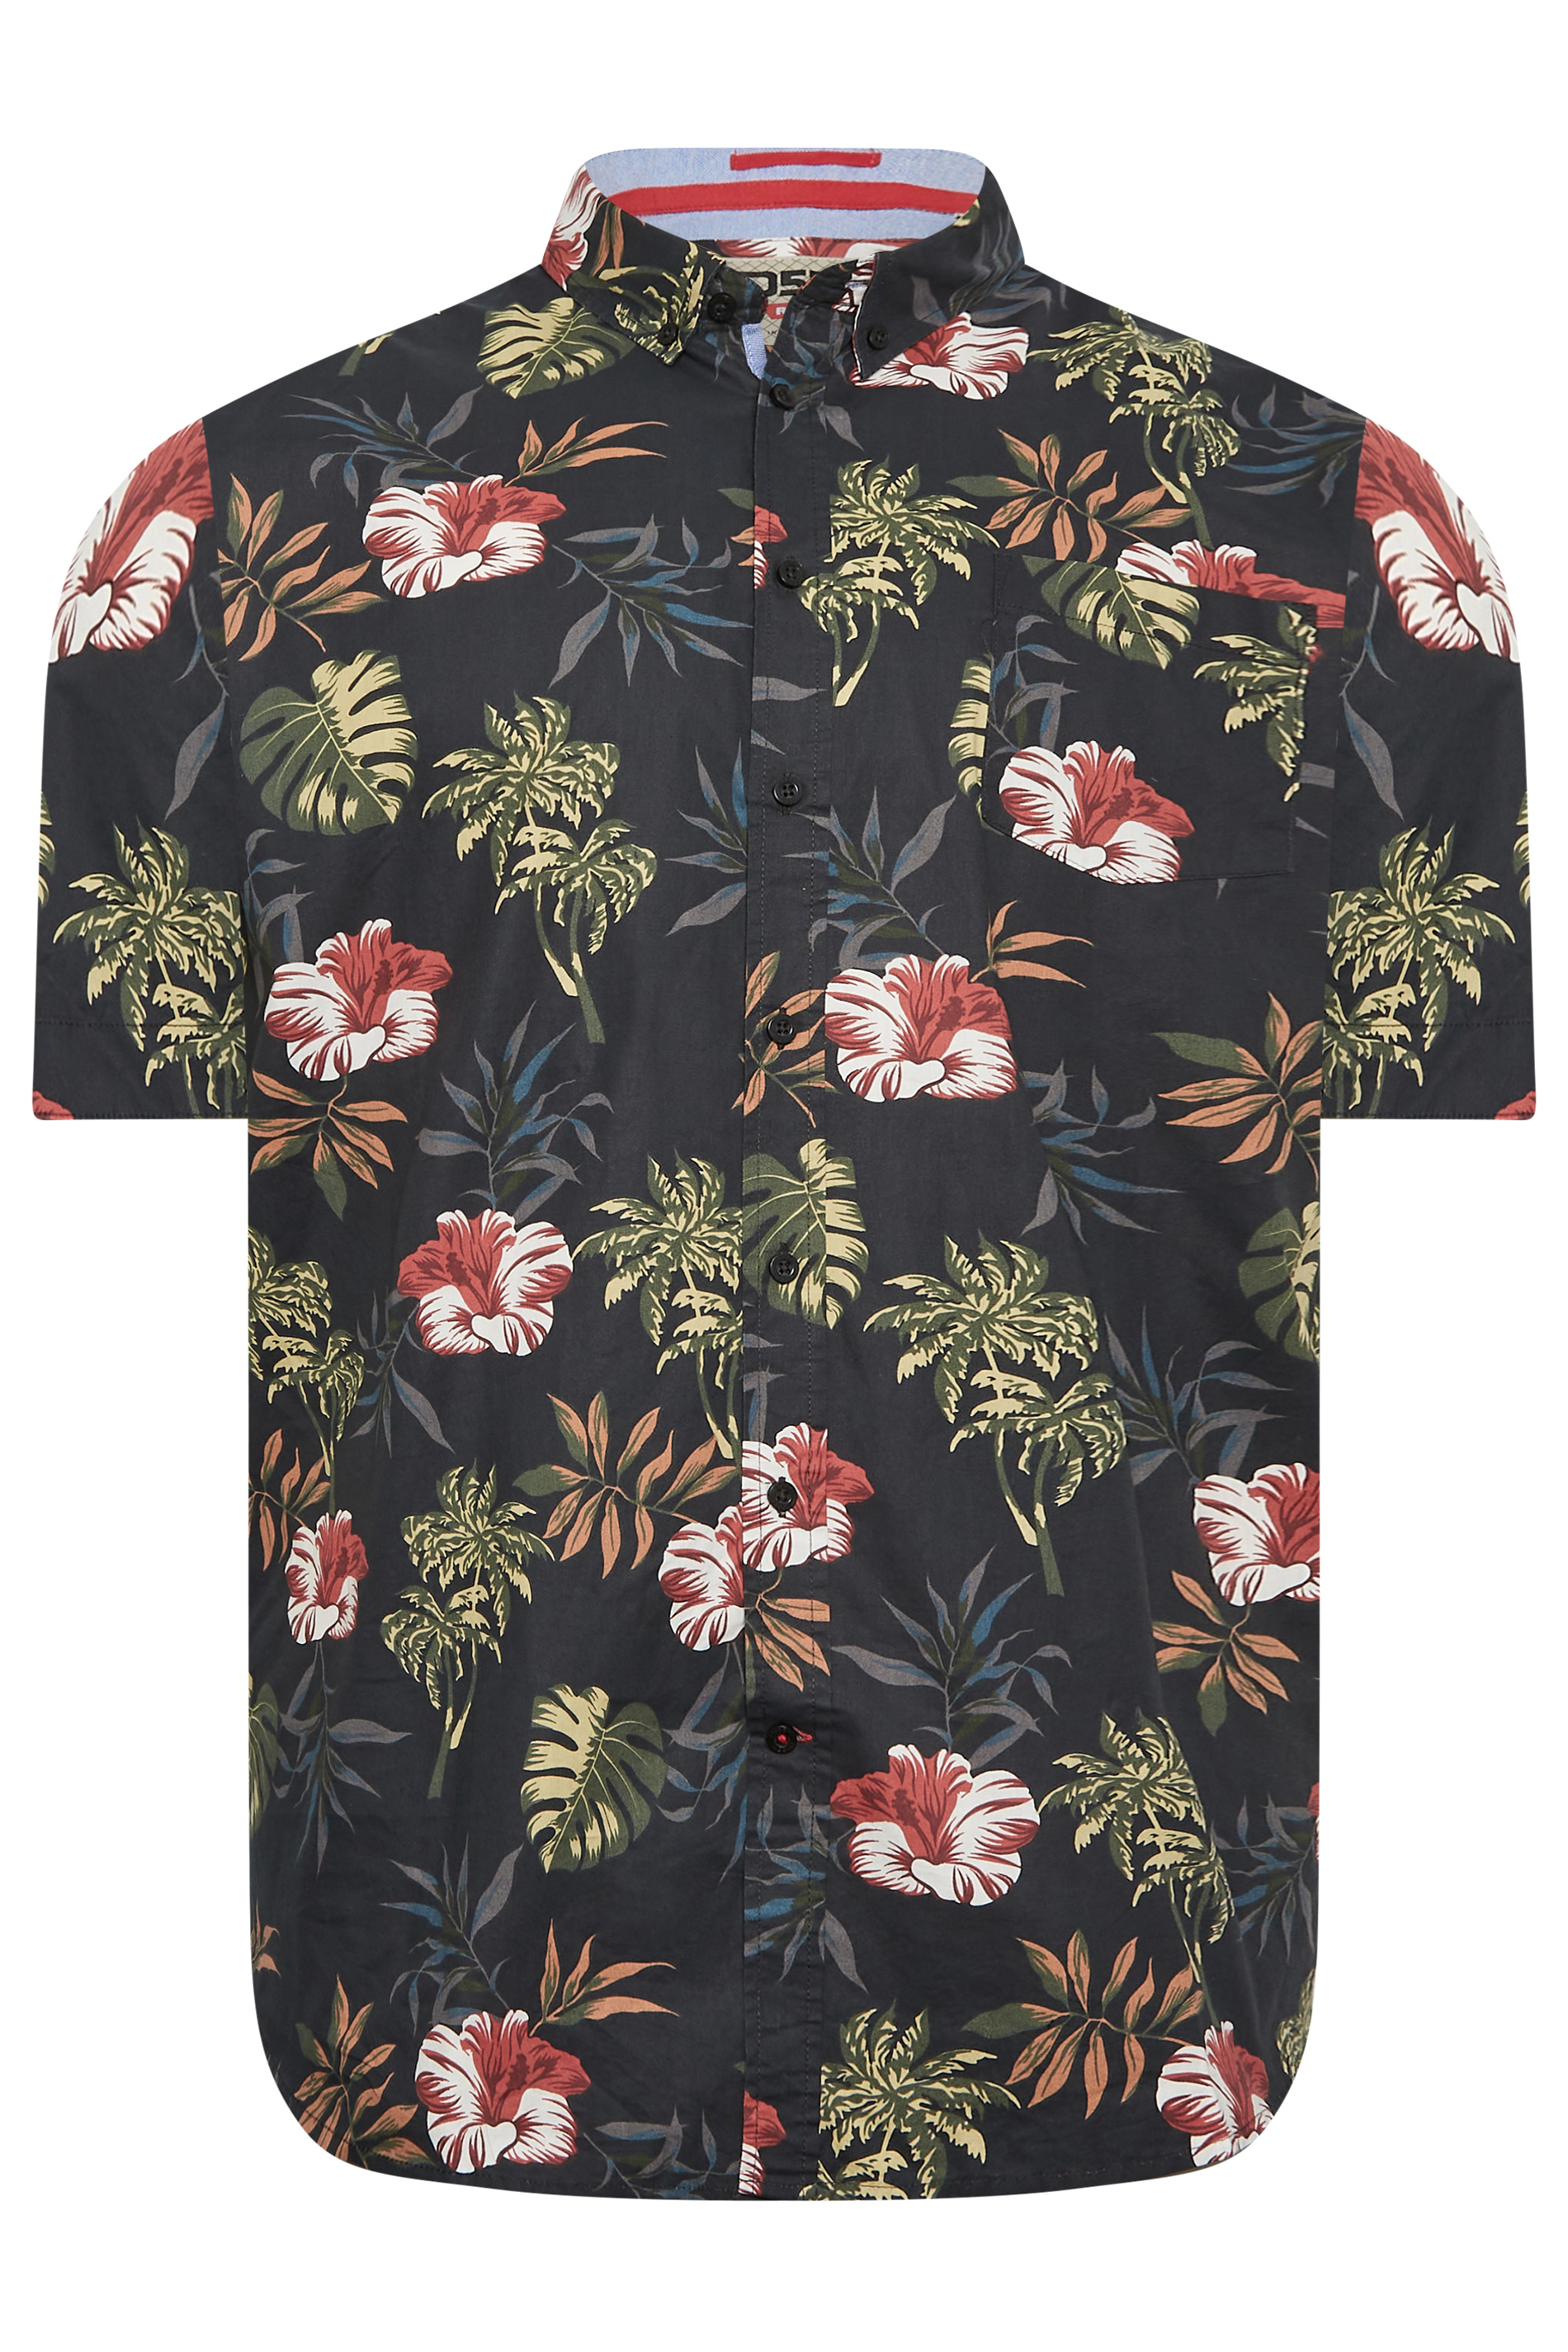 D555 Big & Tall Black Hawaiian Print Shirt | BadRhino 3